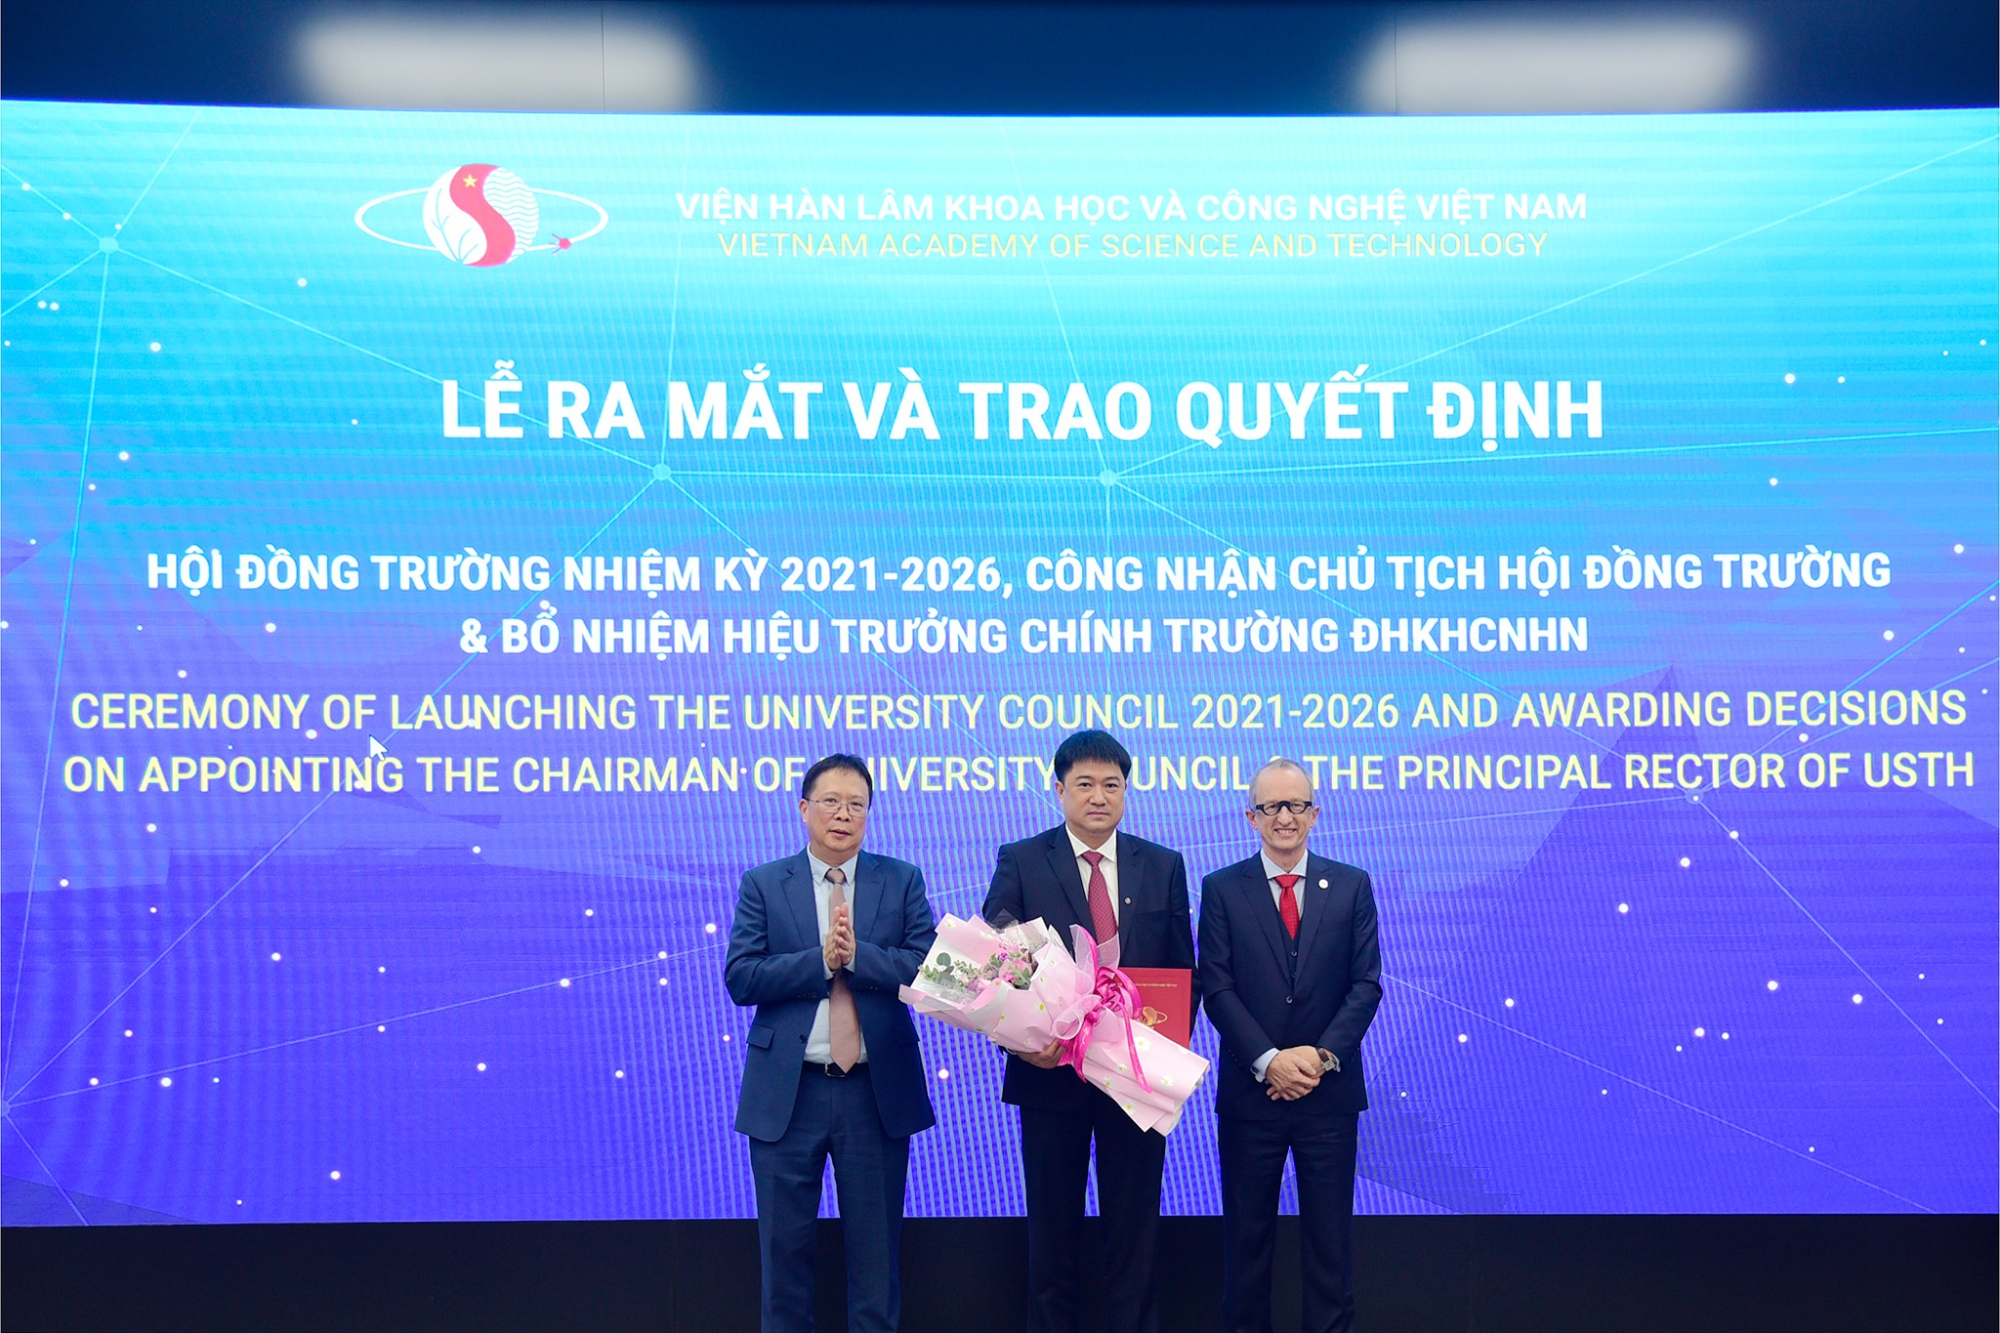 GS VS Châu Văn Minh trao quyết định công nhận Chủ tịch Hội đồng trường cho GS Chu Hoàng Hà